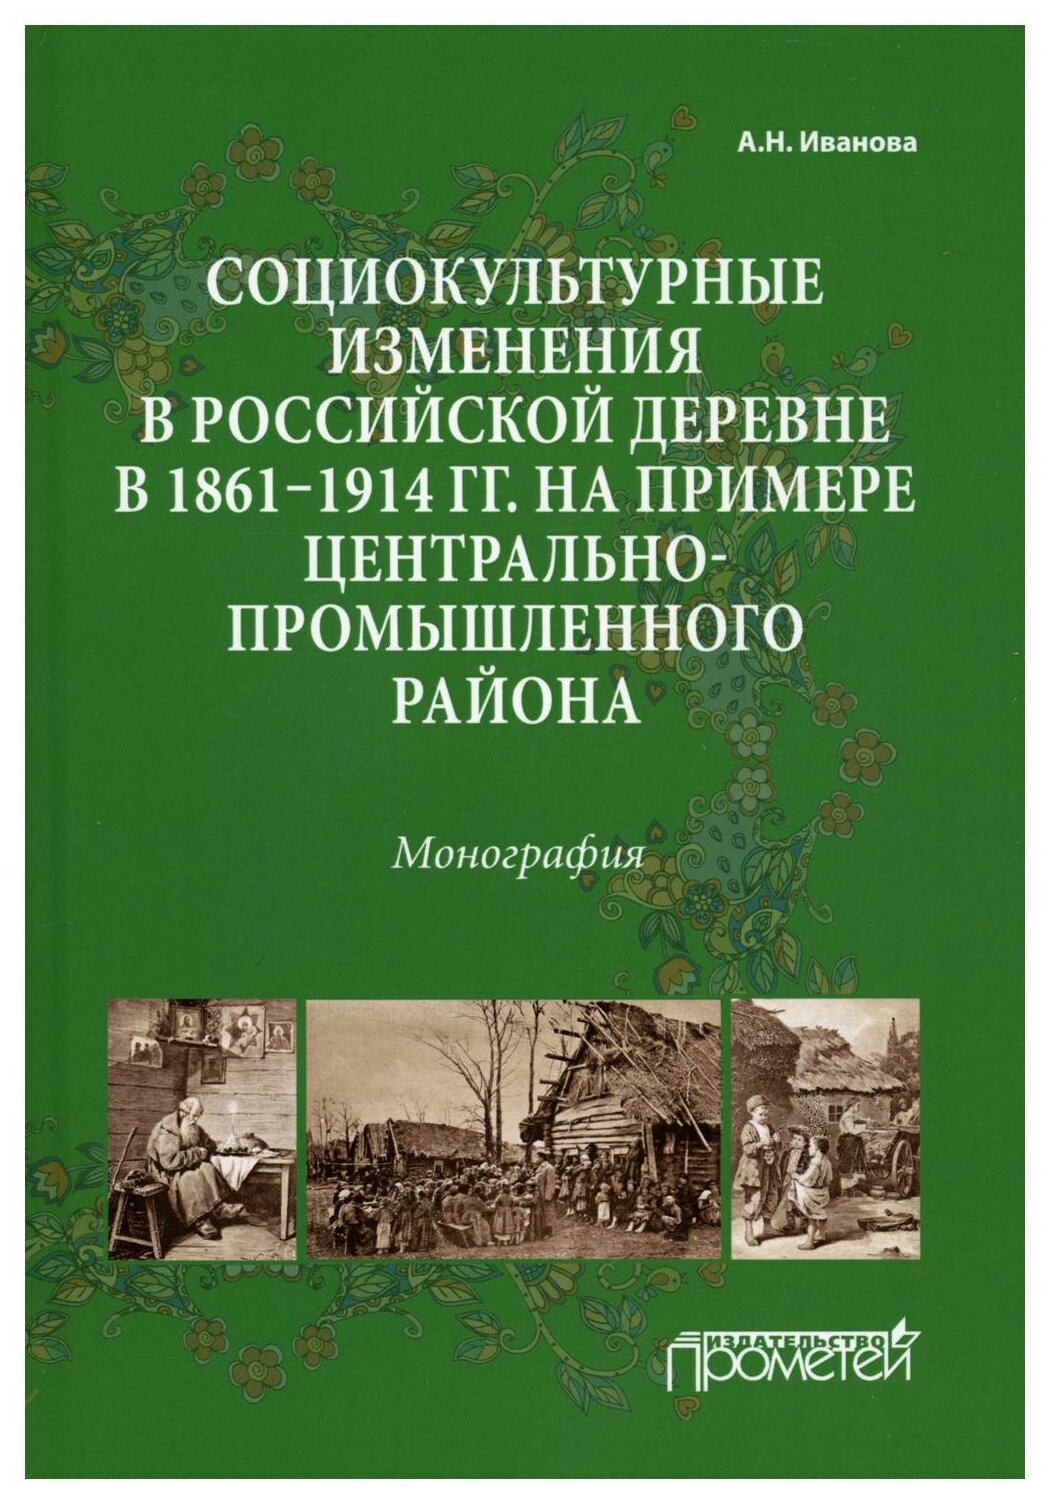 Социокультурные изменения в российской деревне в 1861—1914 гг. - фото №1